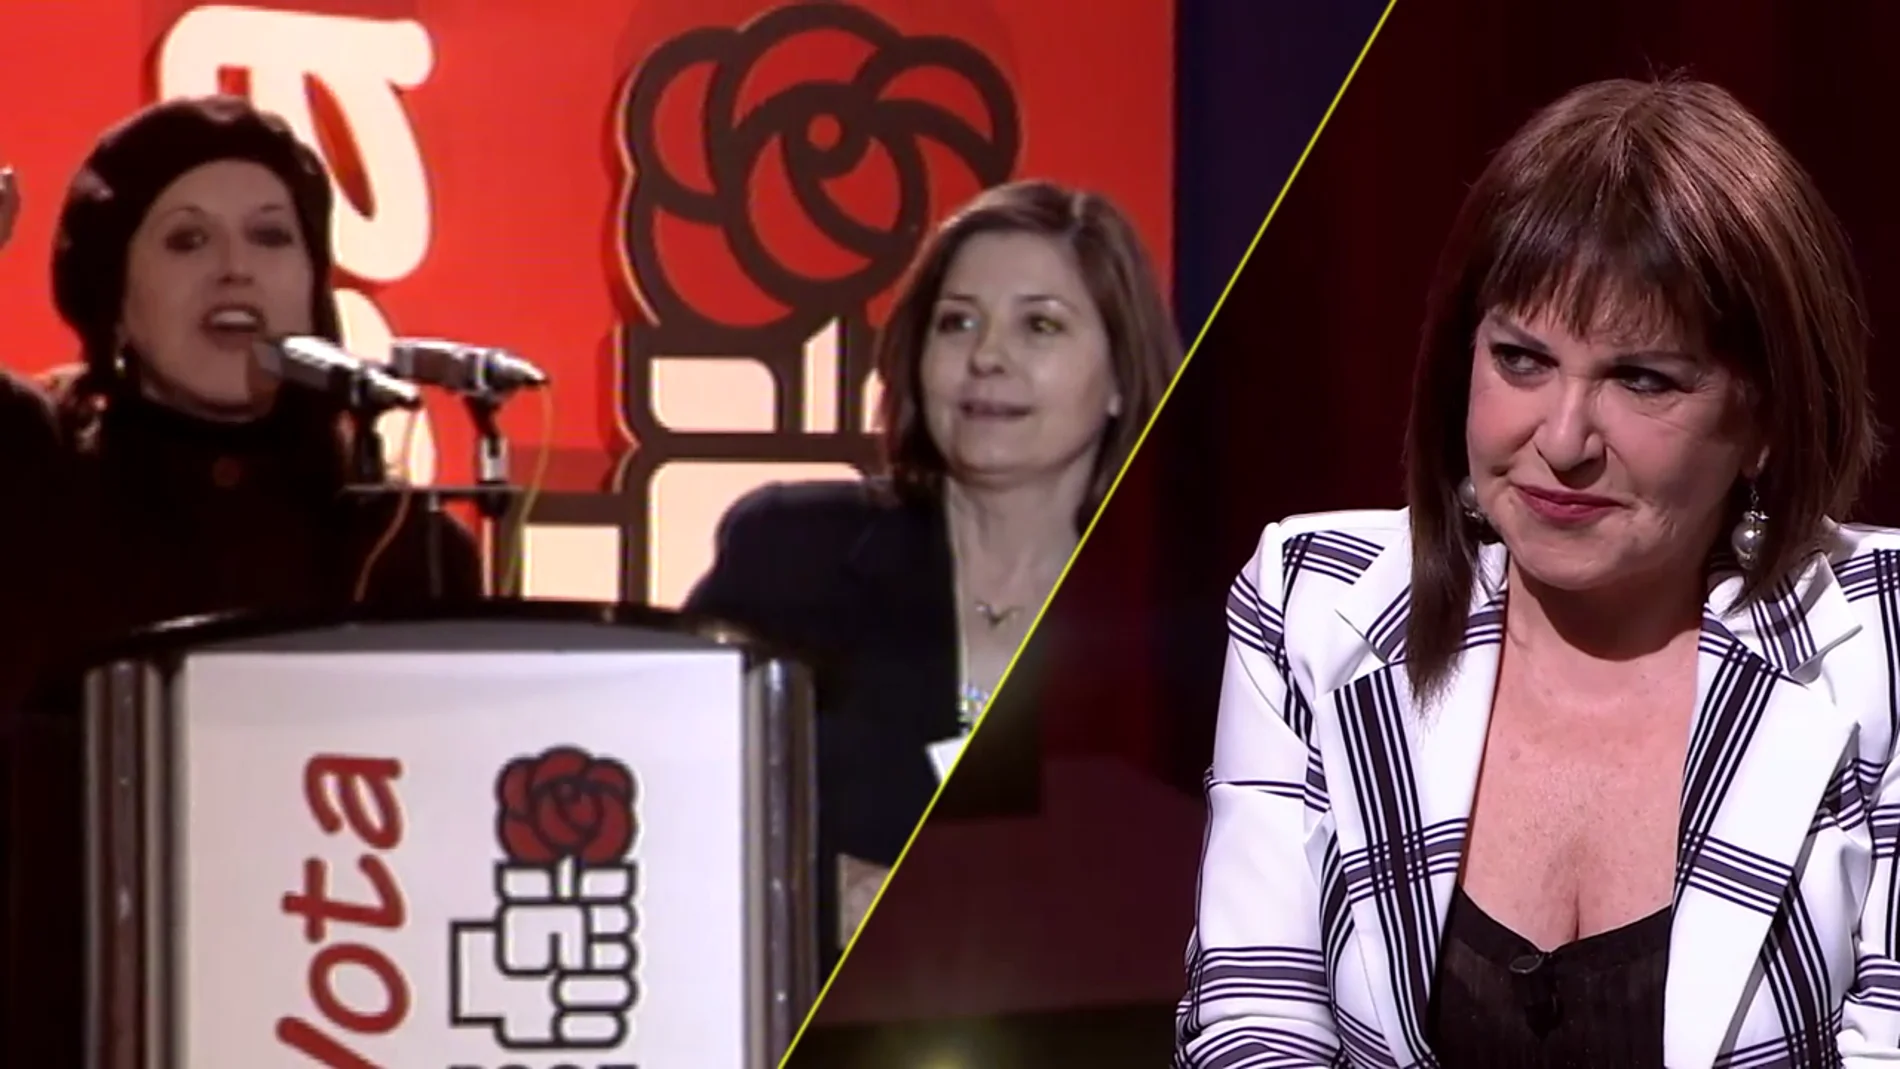 Así fue la férrea defensa de Loles León a Felipe González en su campaña electoral: "Mi madre me enseñó a entender el socialismo de corazón"